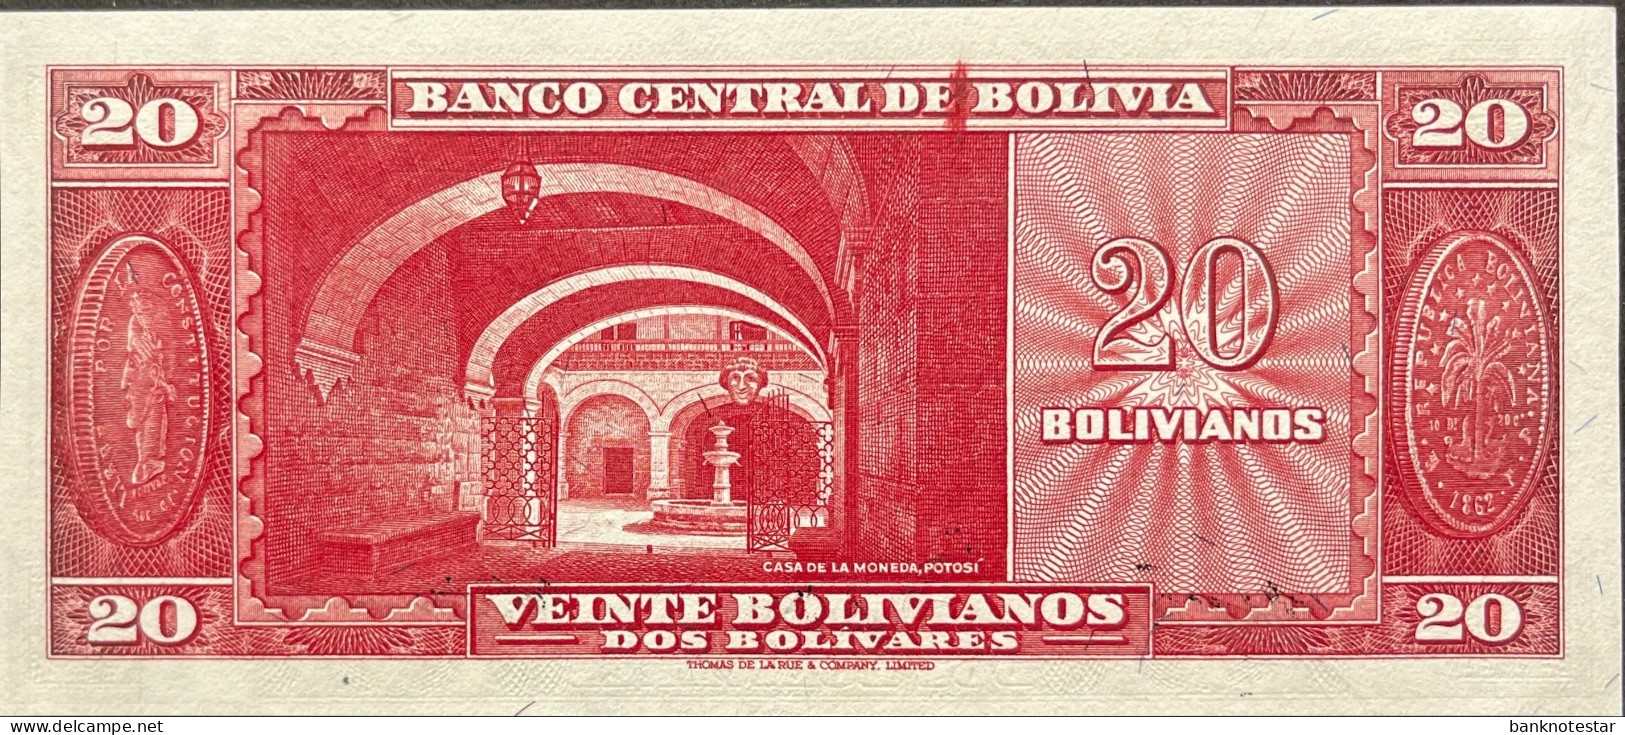 Bolivia 20 Bolivianos, P-140 (L.1945) - UNC - Bolivie